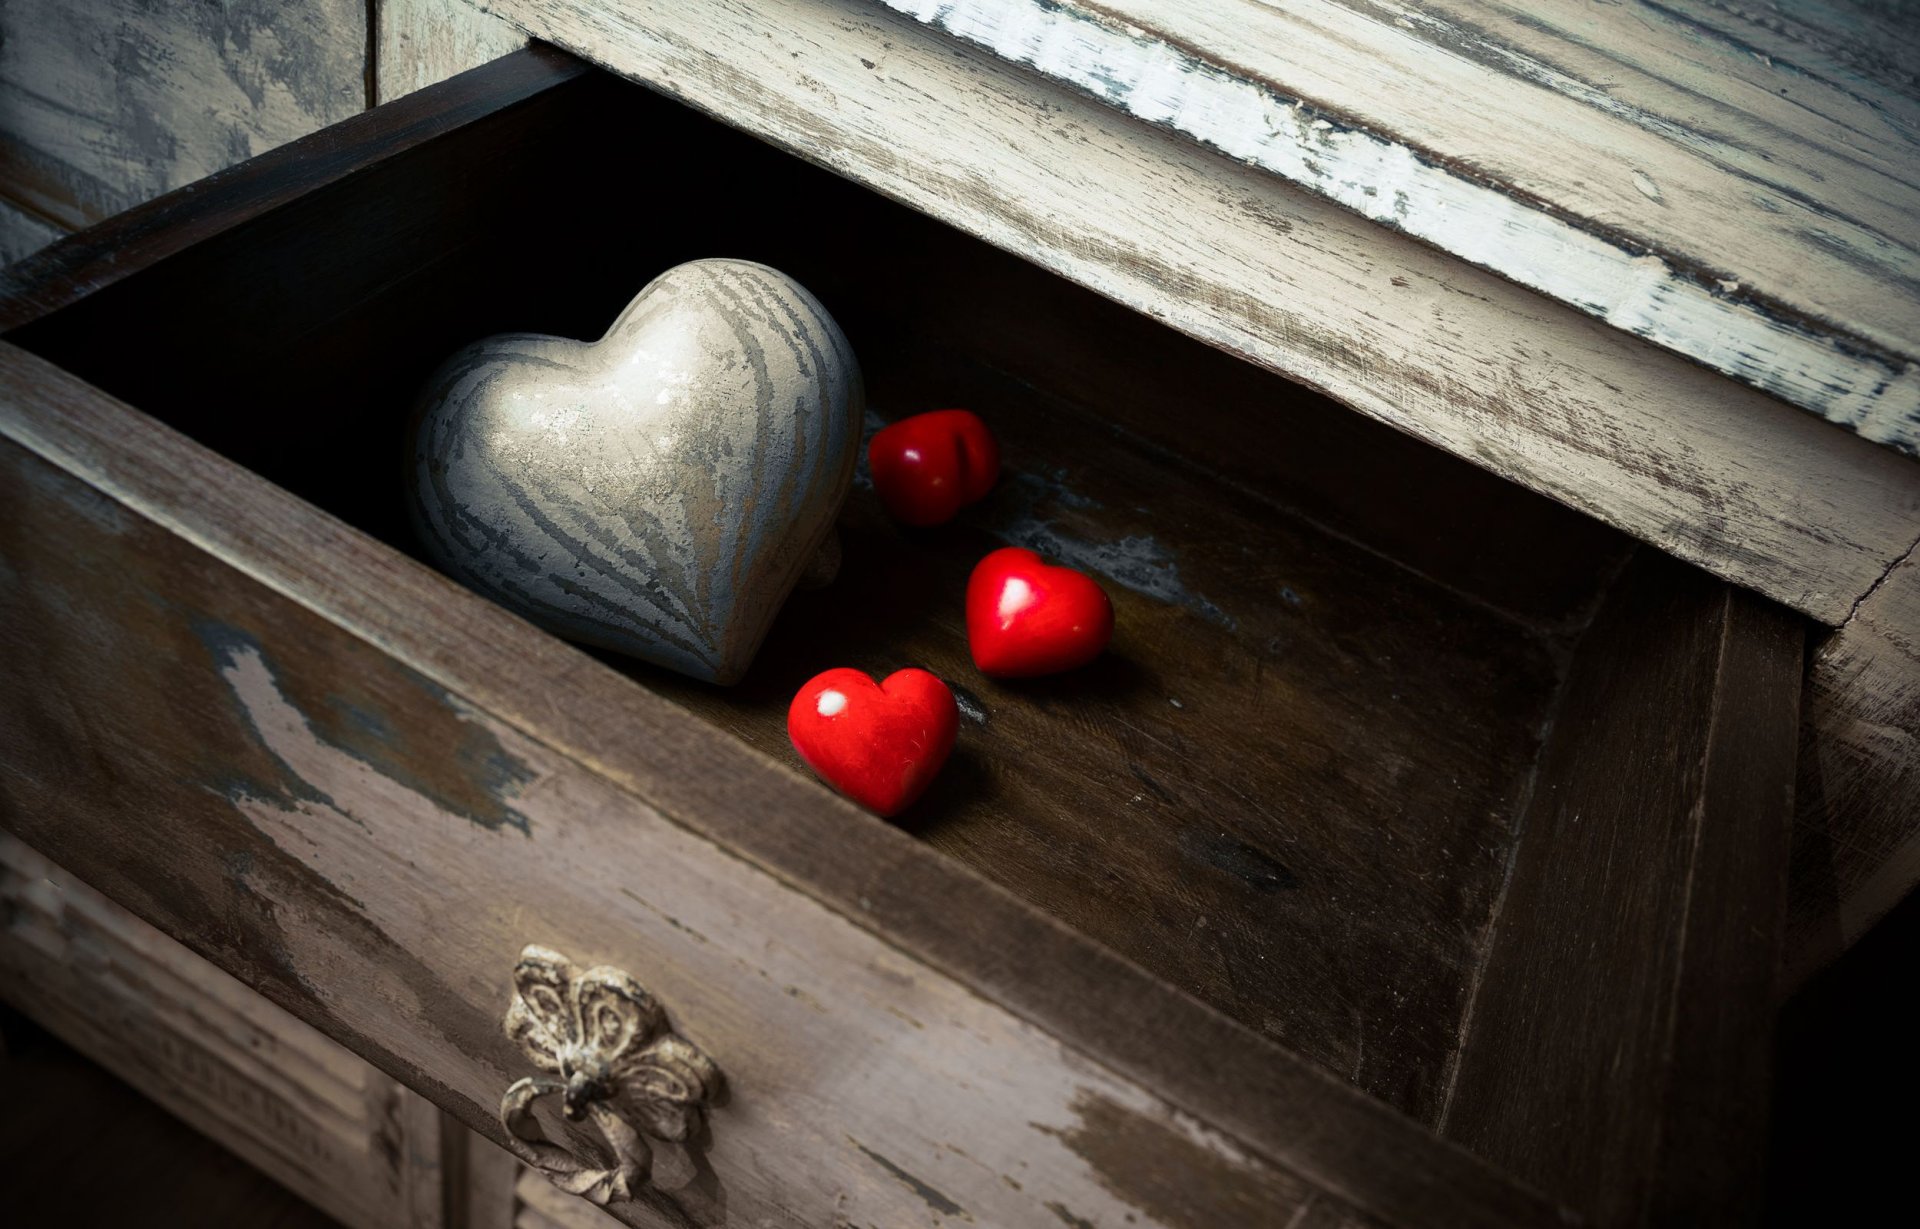 amor fondos de pantalla hd tamaño completo,rojo,fotografía de naturaleza muerta,madera,corazón,mueble